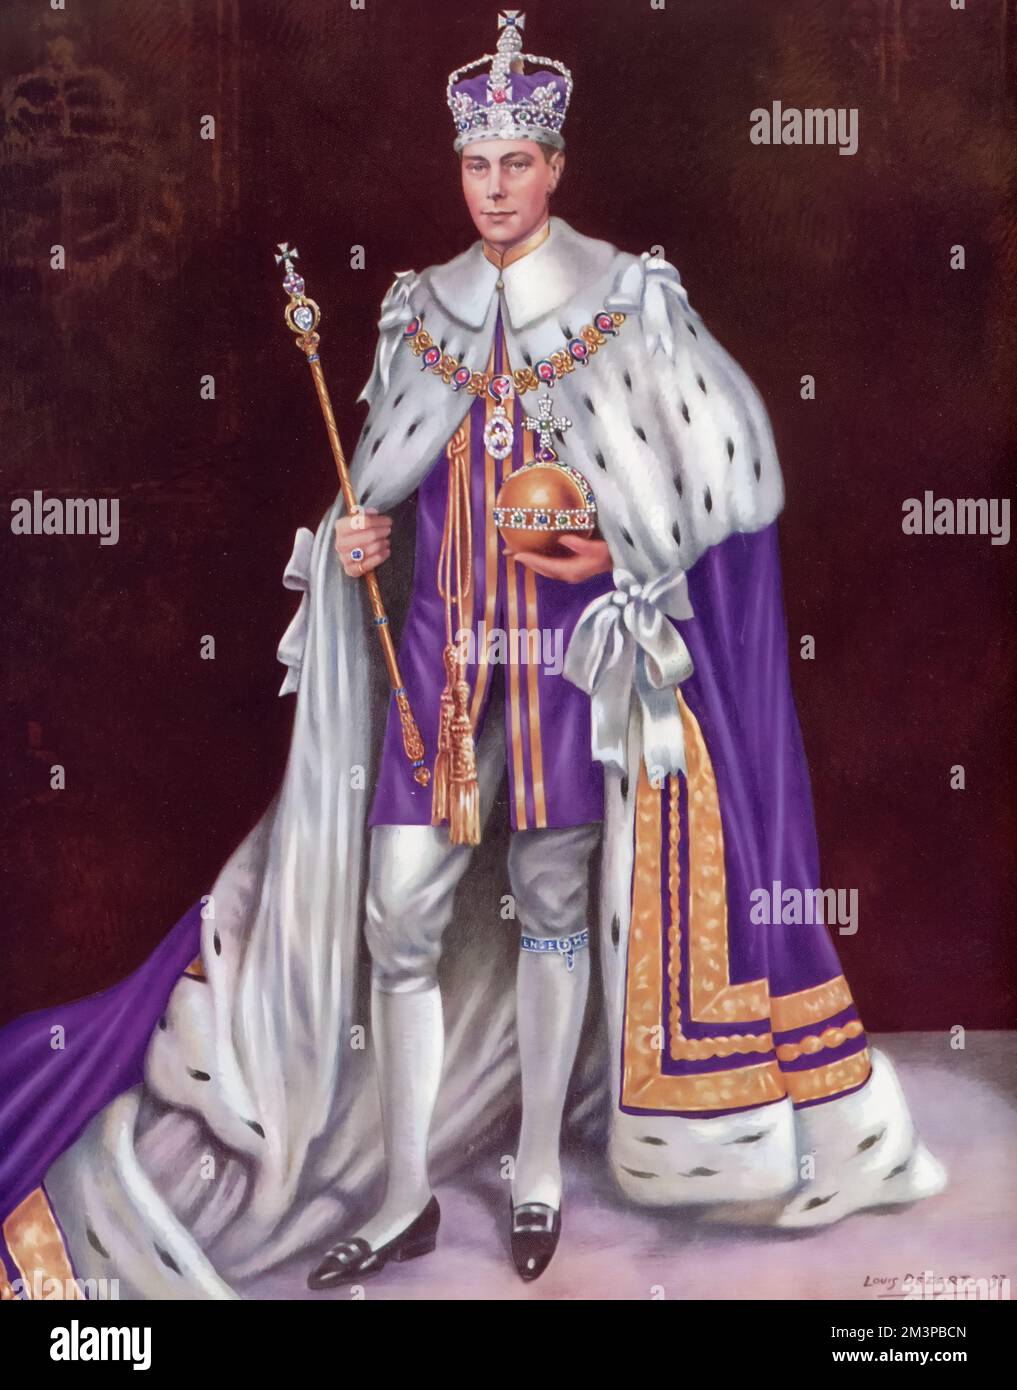 Sa Majesté le roi George VI (1895-1952) portant des robes de couronnement et tenant régalia de couronnement, 1937. Par Louis Dezart. Le couronnement de George VI a eu lieu le 12th mai 1937 à l'abbaye de Westminster, date prévue auparavant pour le couronnement de son frère Edward VIII. Banque D'Images